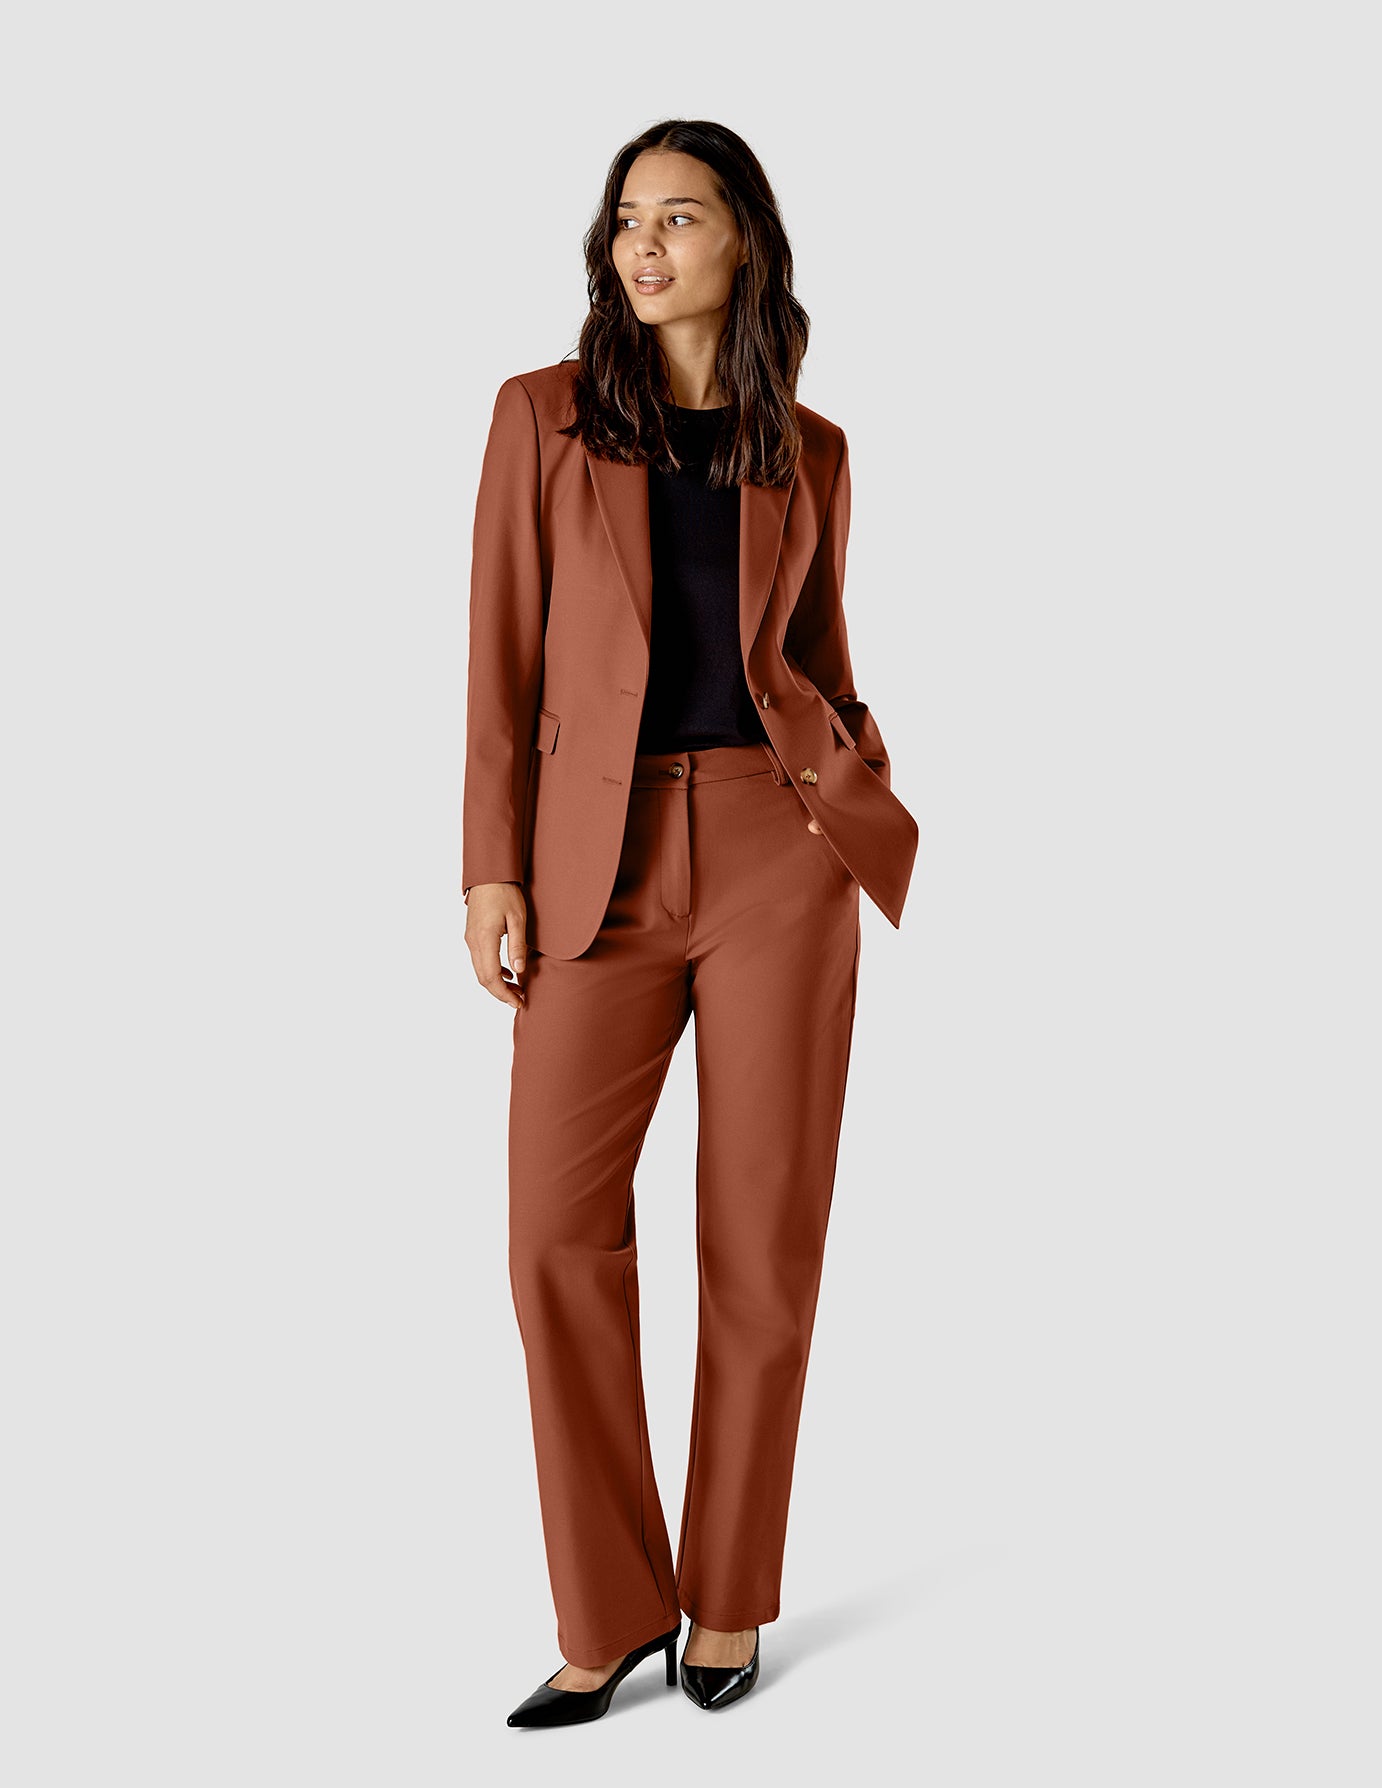 Marycrafts Women's Business Blazer Pant Suit Set India | Ubuy